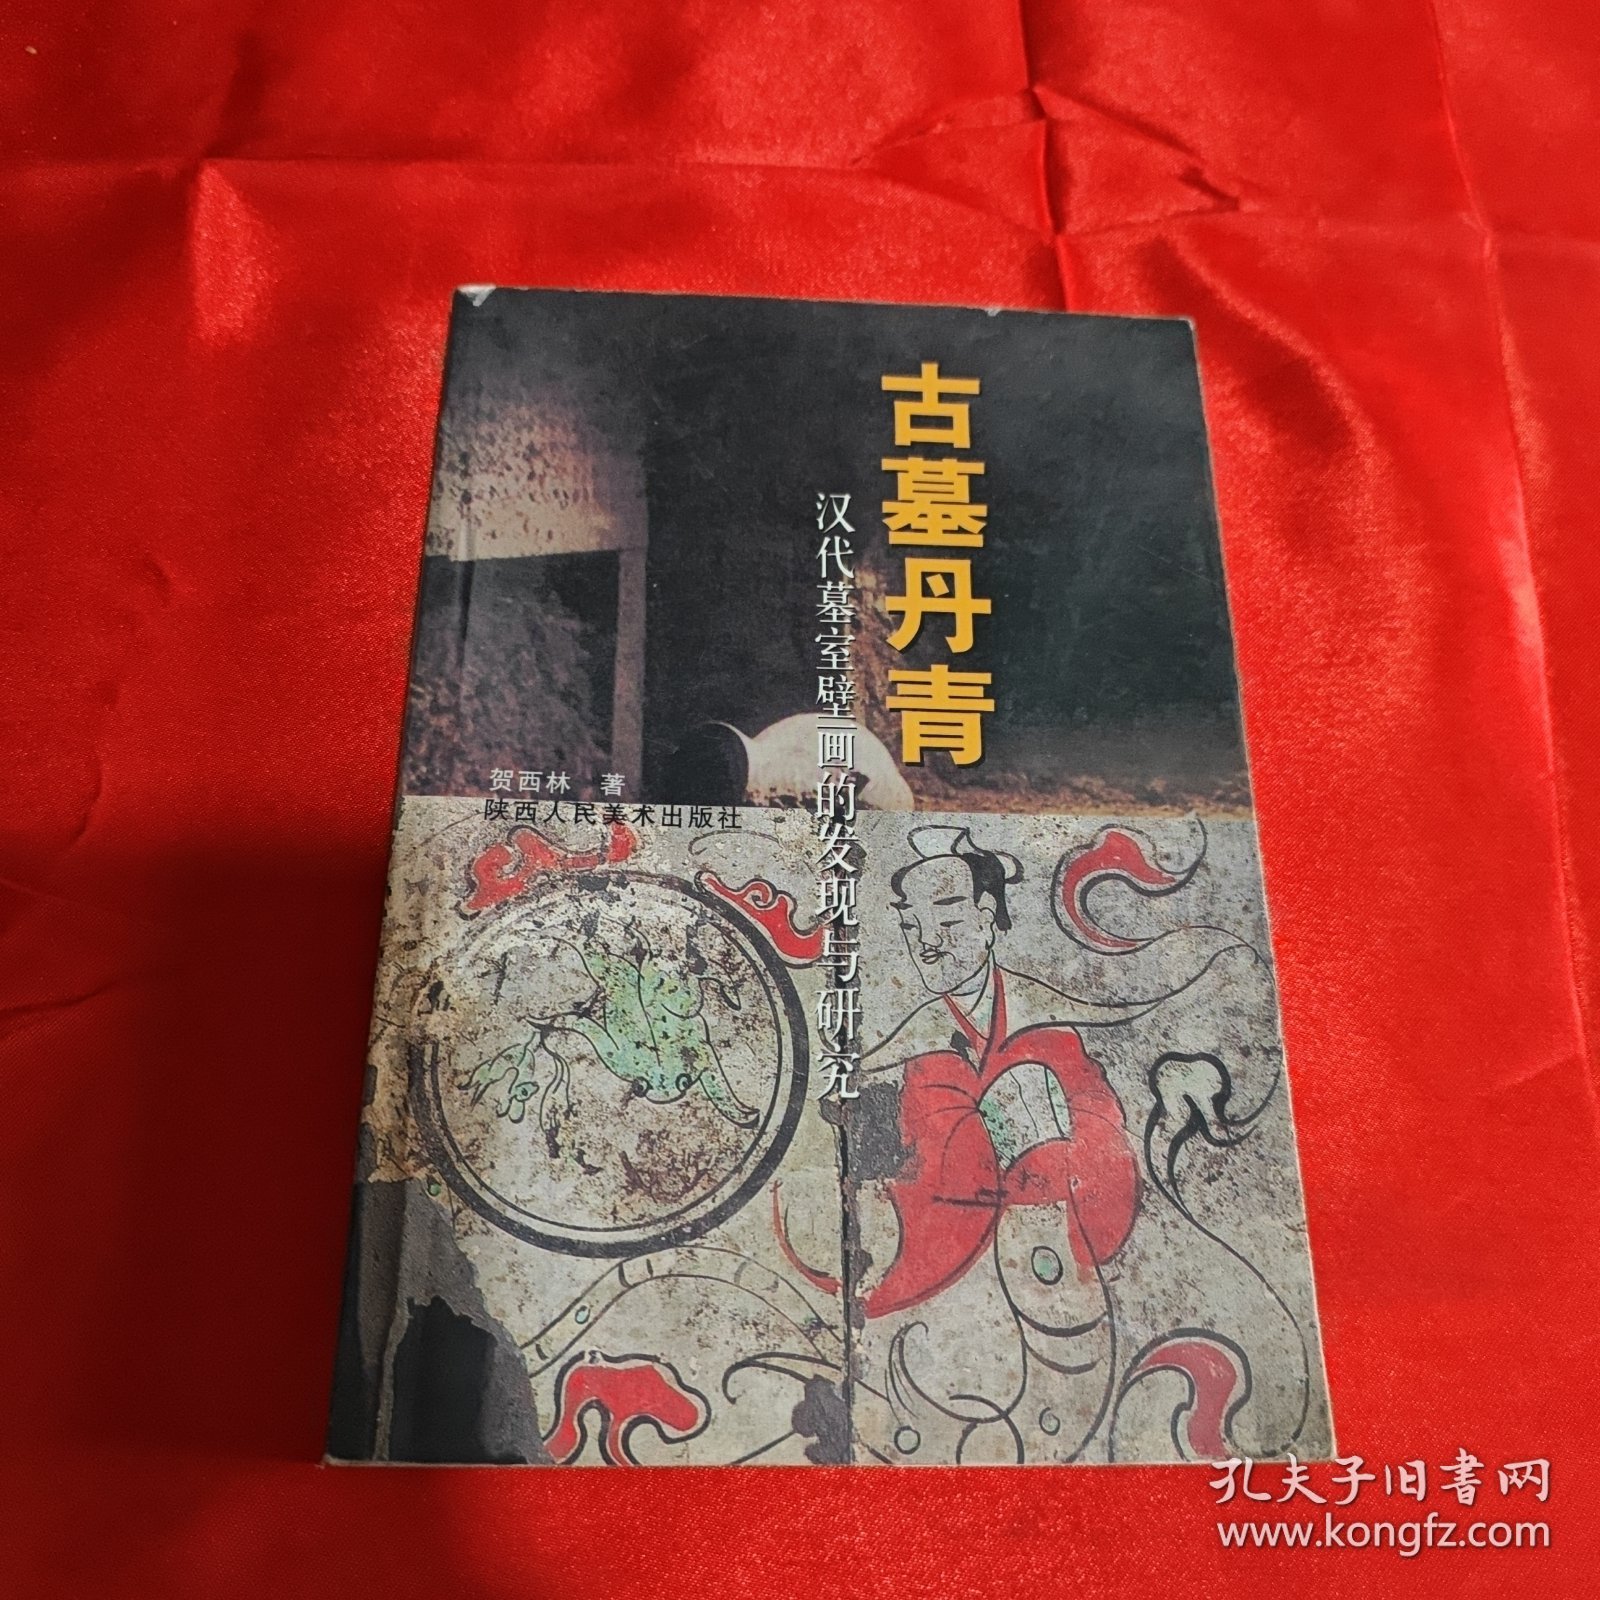 古墓丹青：汉代墓室壁画的发现与研究